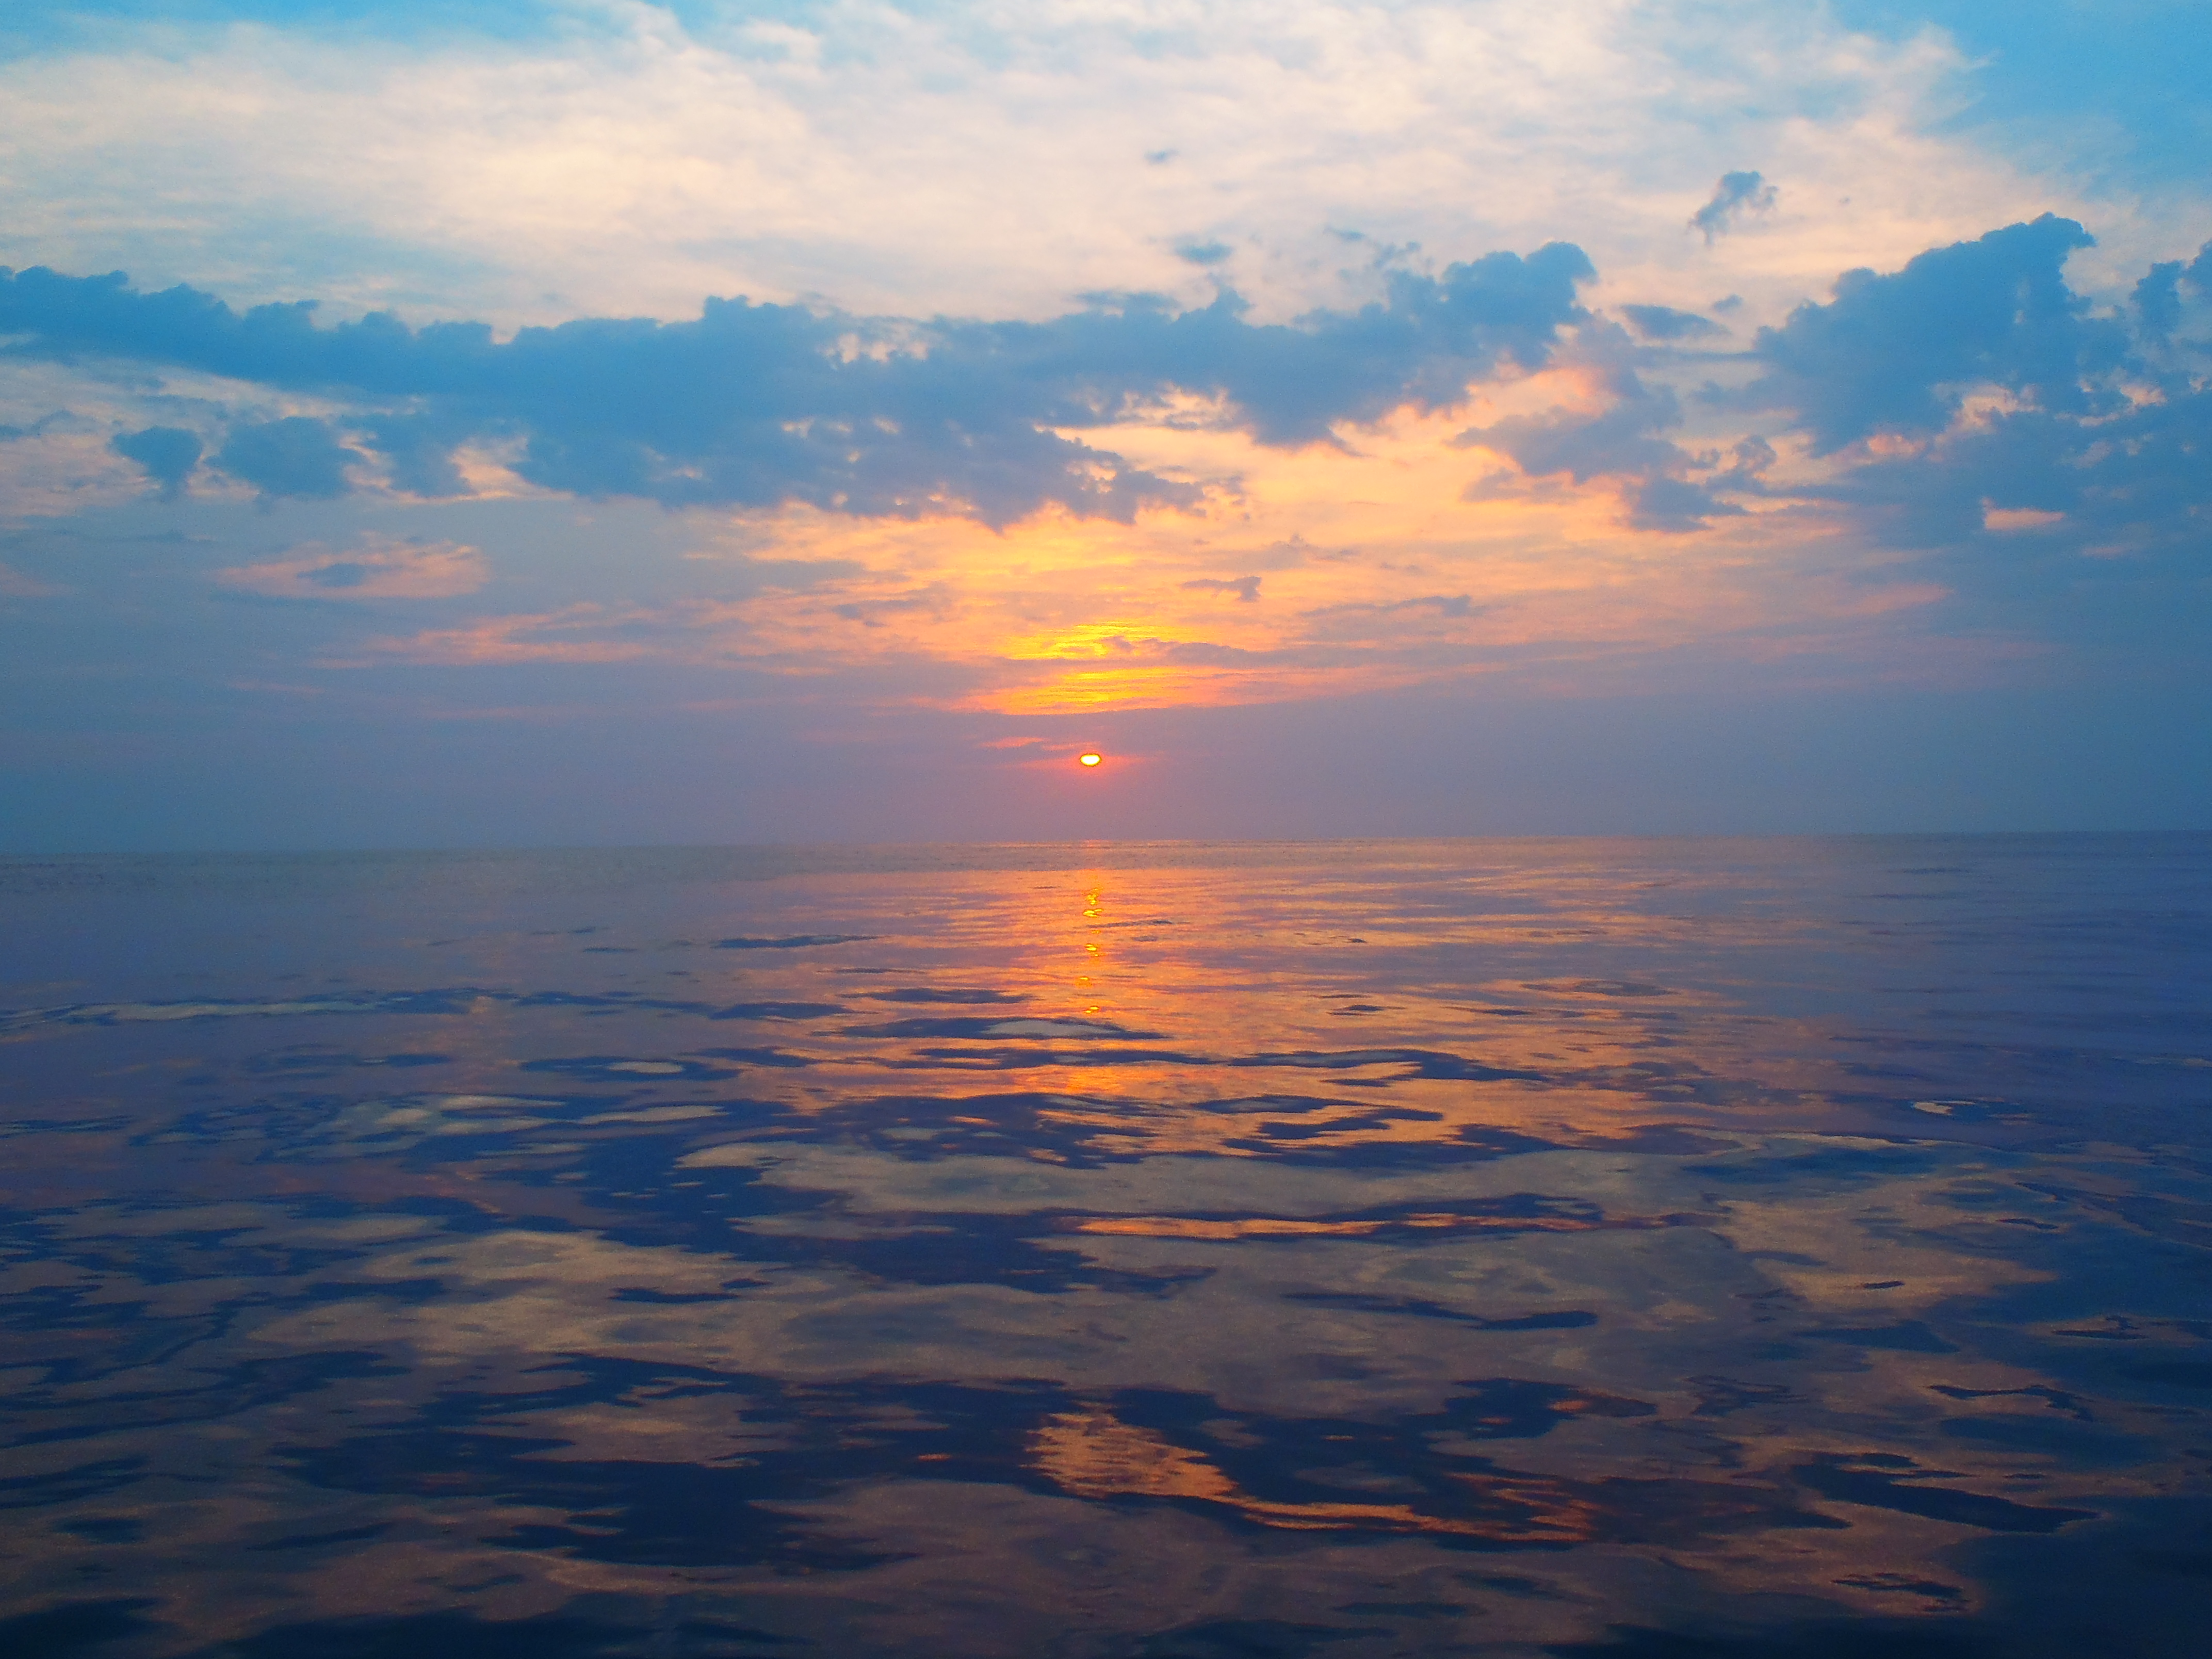 Sunset at Sea – SV Mermaid